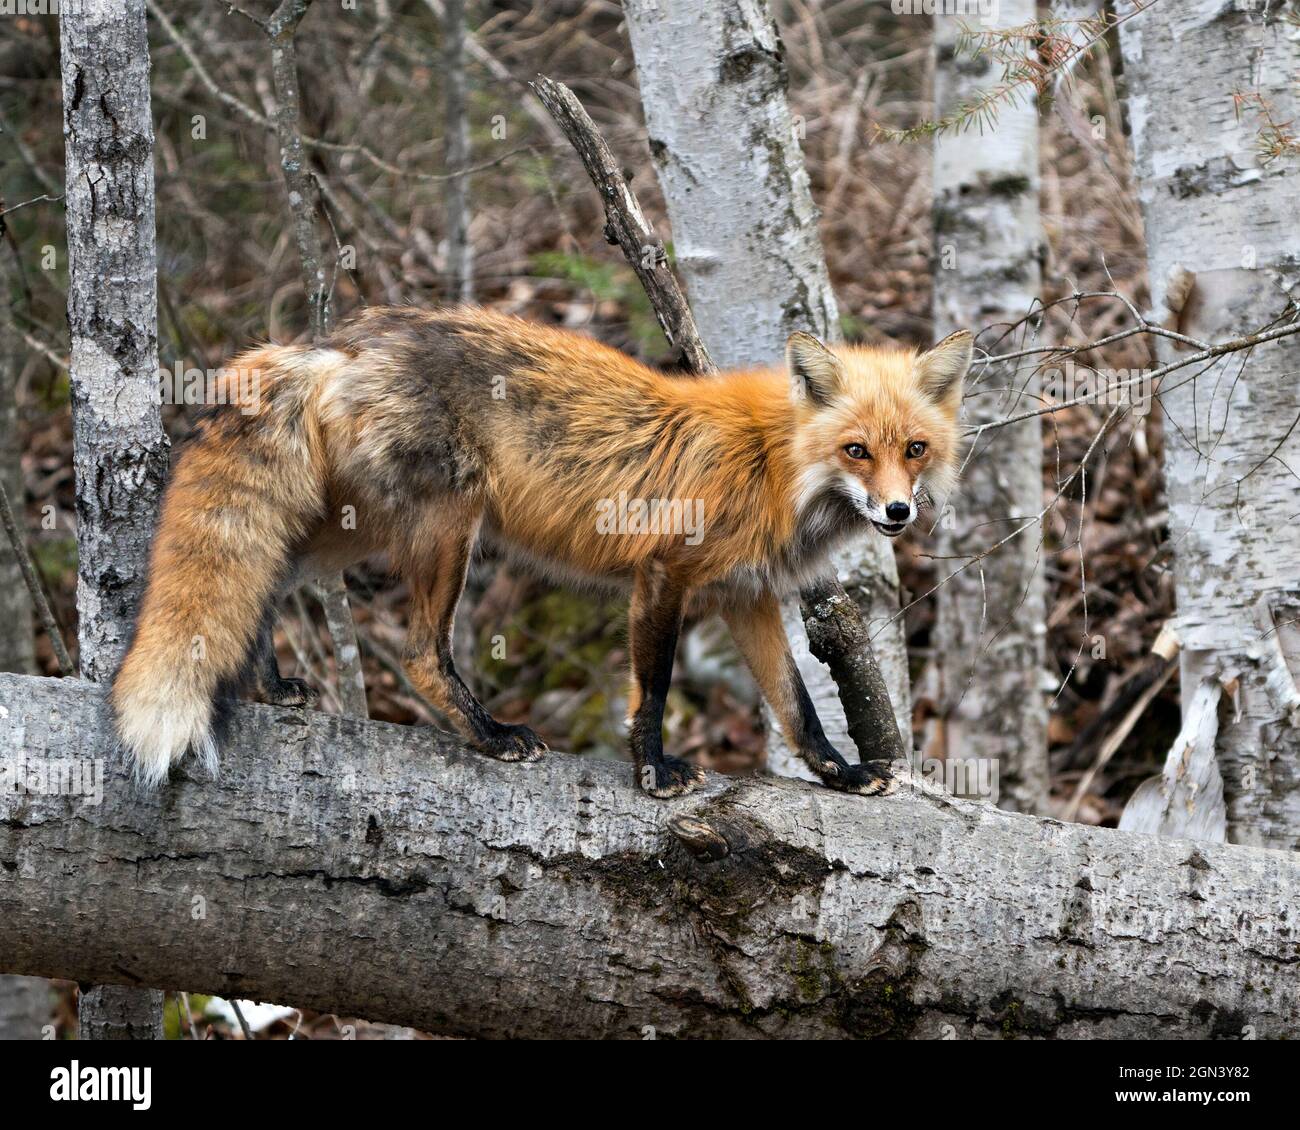 Red Fox in piedi sul log con sfondo foresta sfocata e guardare la fotocamera nel suo ambiente e habitat. Immagine Fox. Immagine. Verticale. Foto Stock